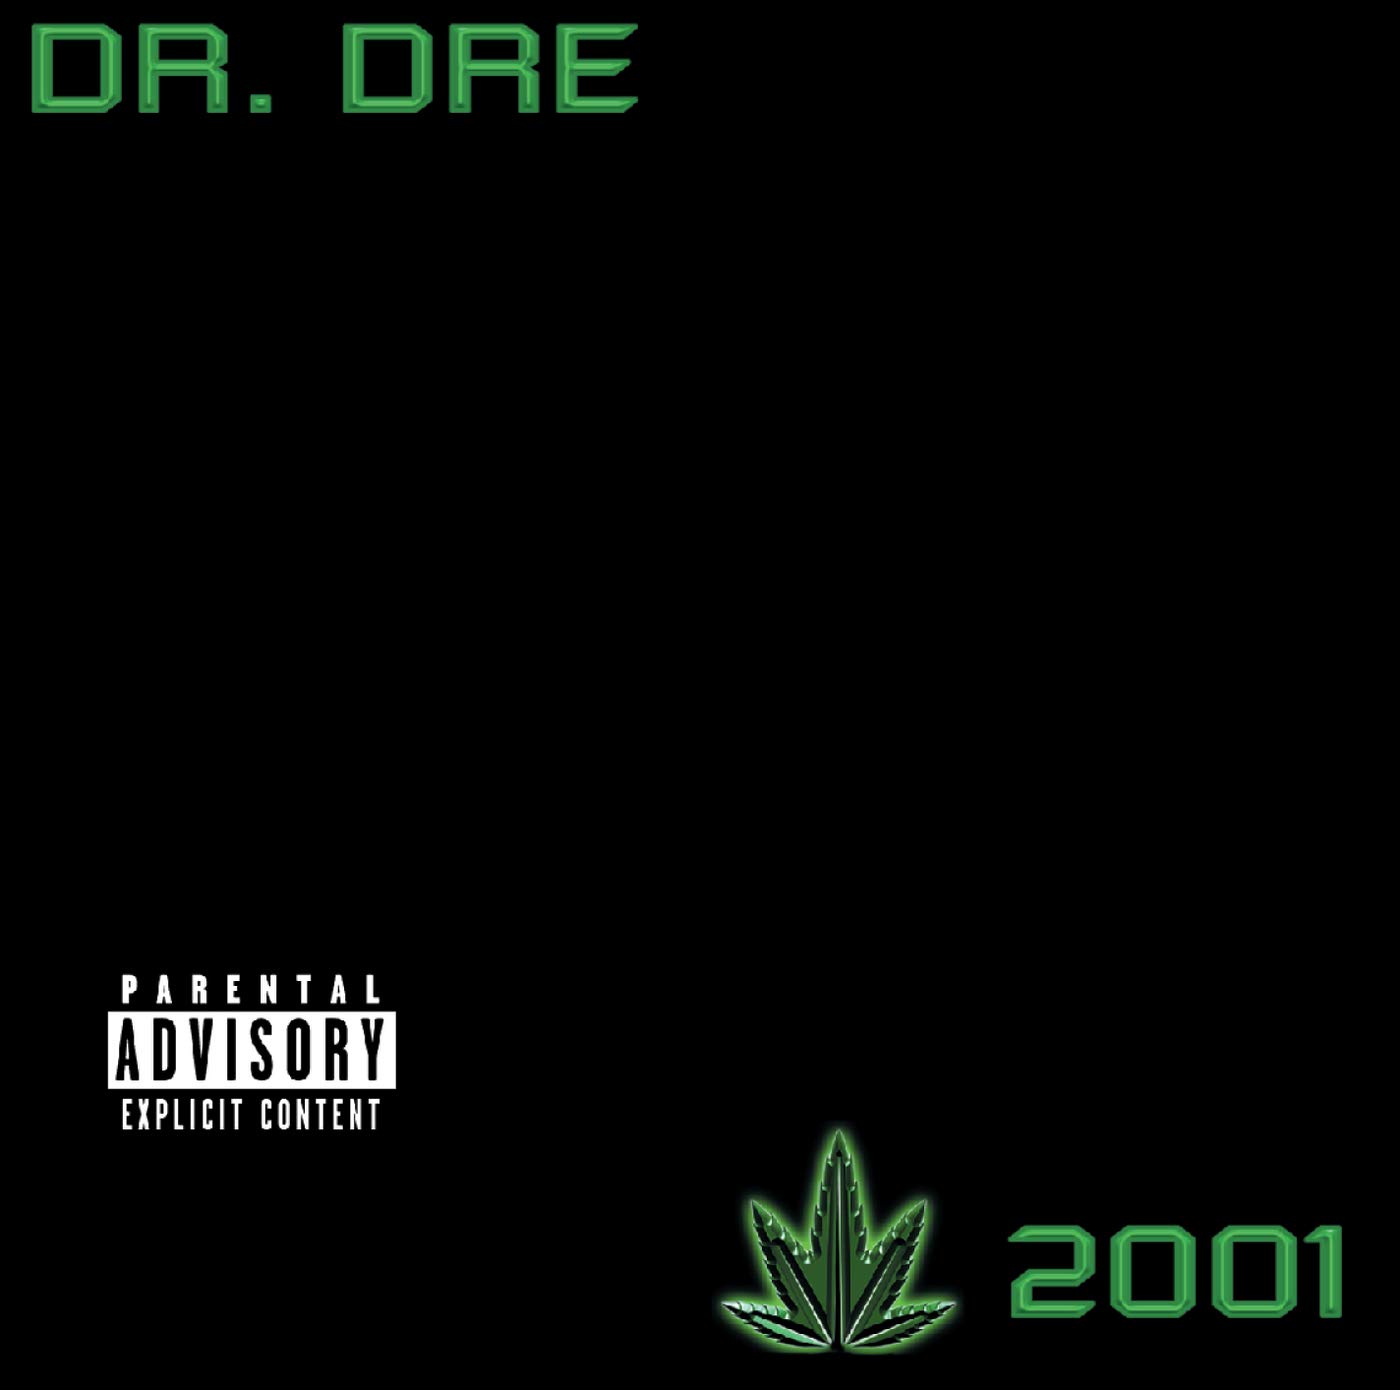 Dr. Dre "2001" 2LP